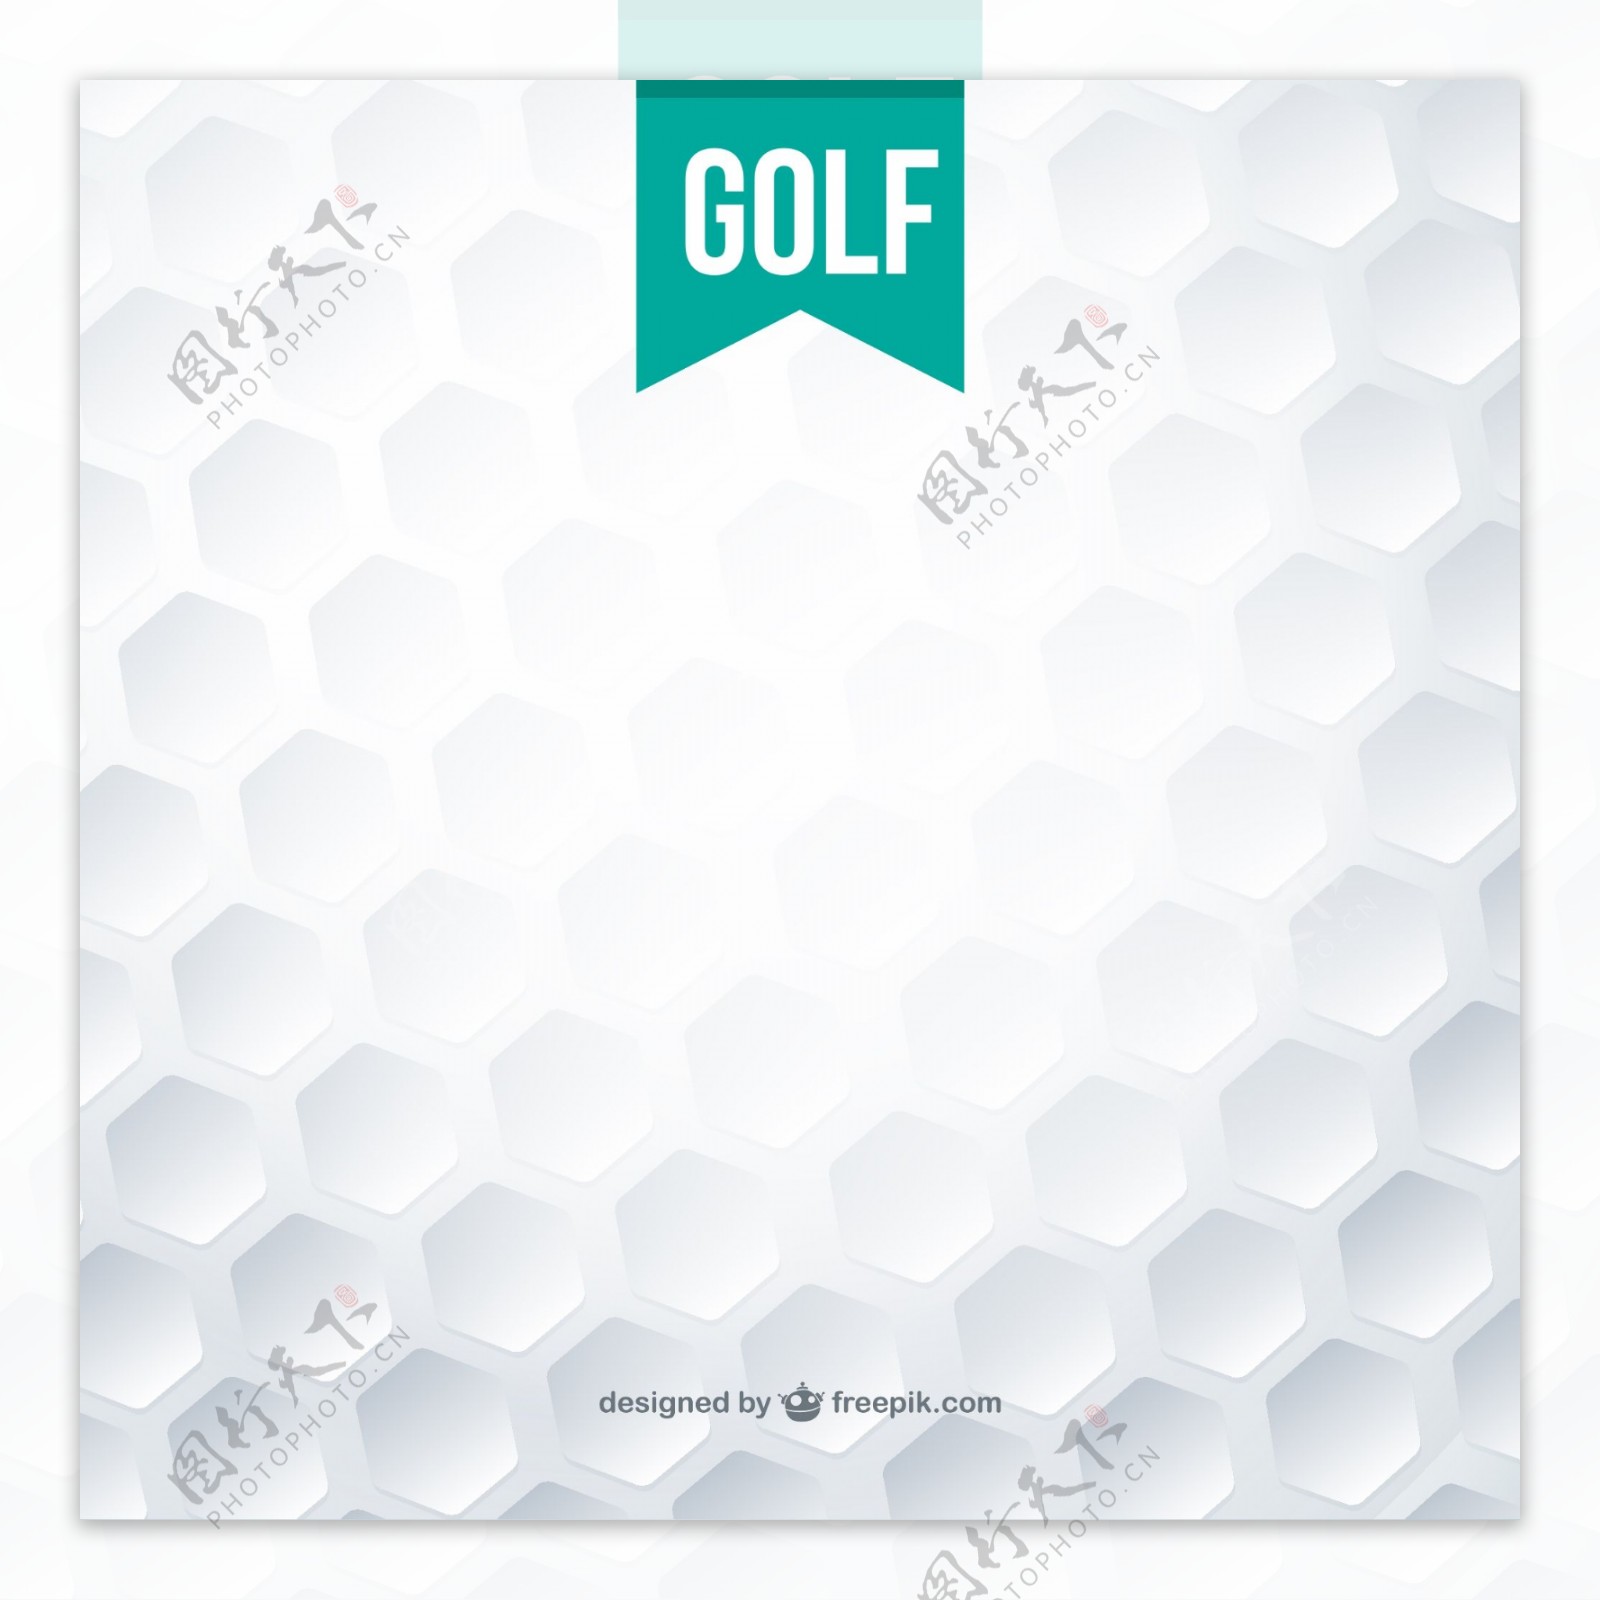 高尔夫球纹理背景矢量图